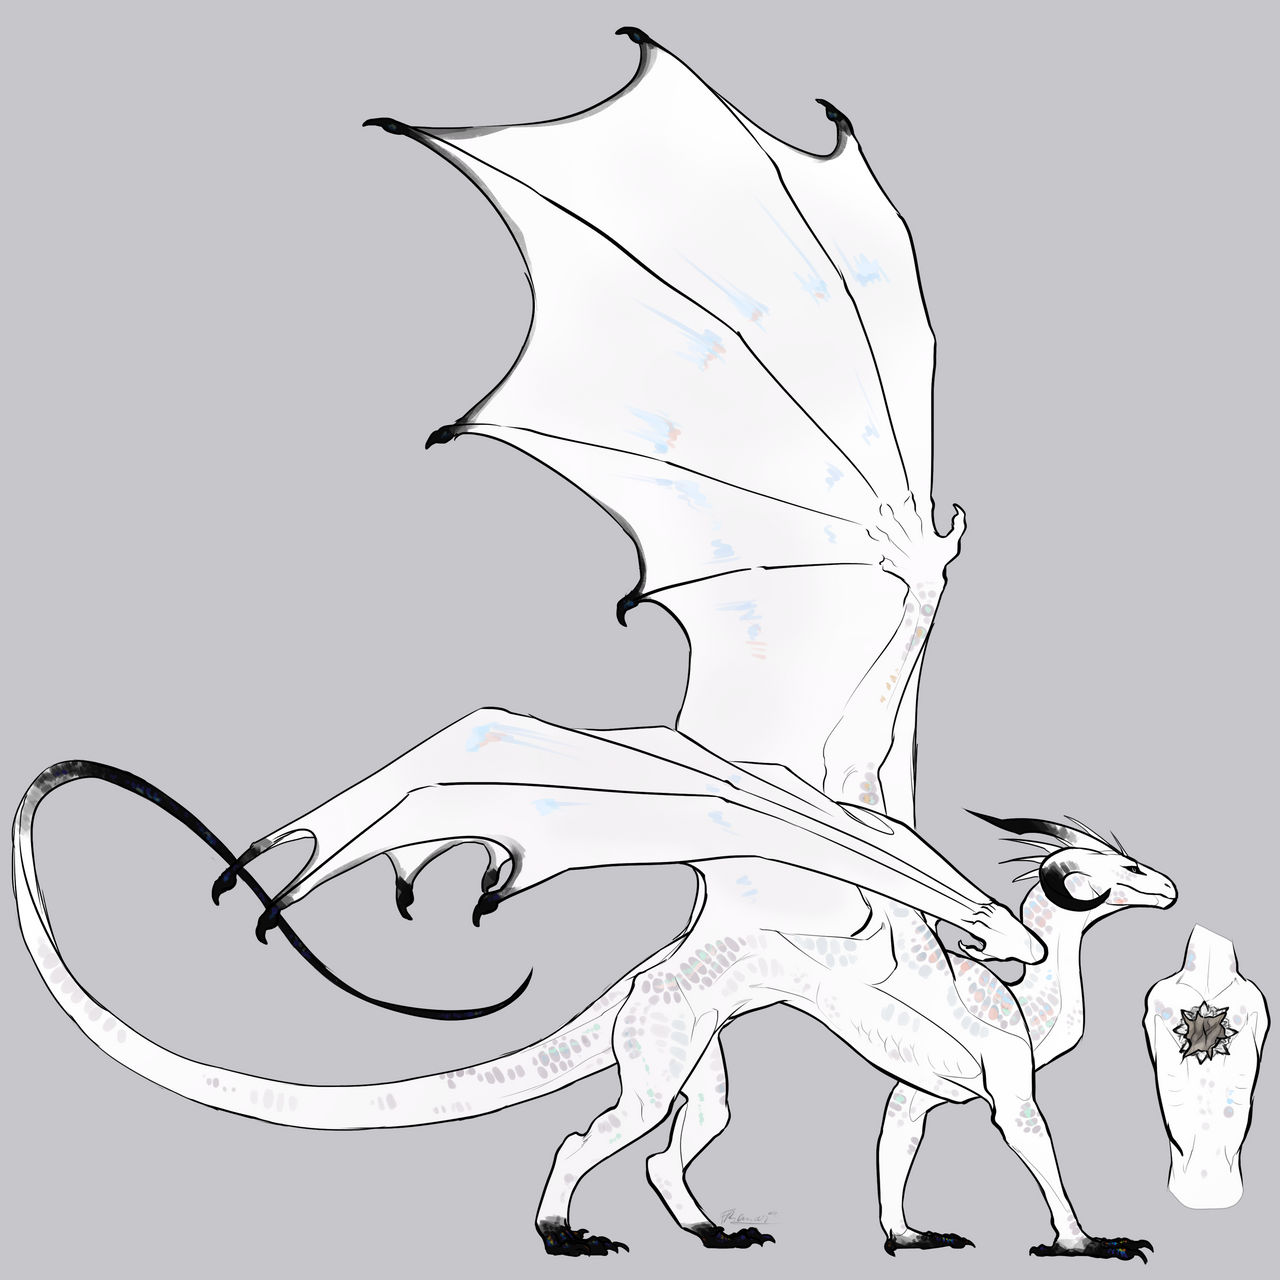 Design Commission:.dragon tomo